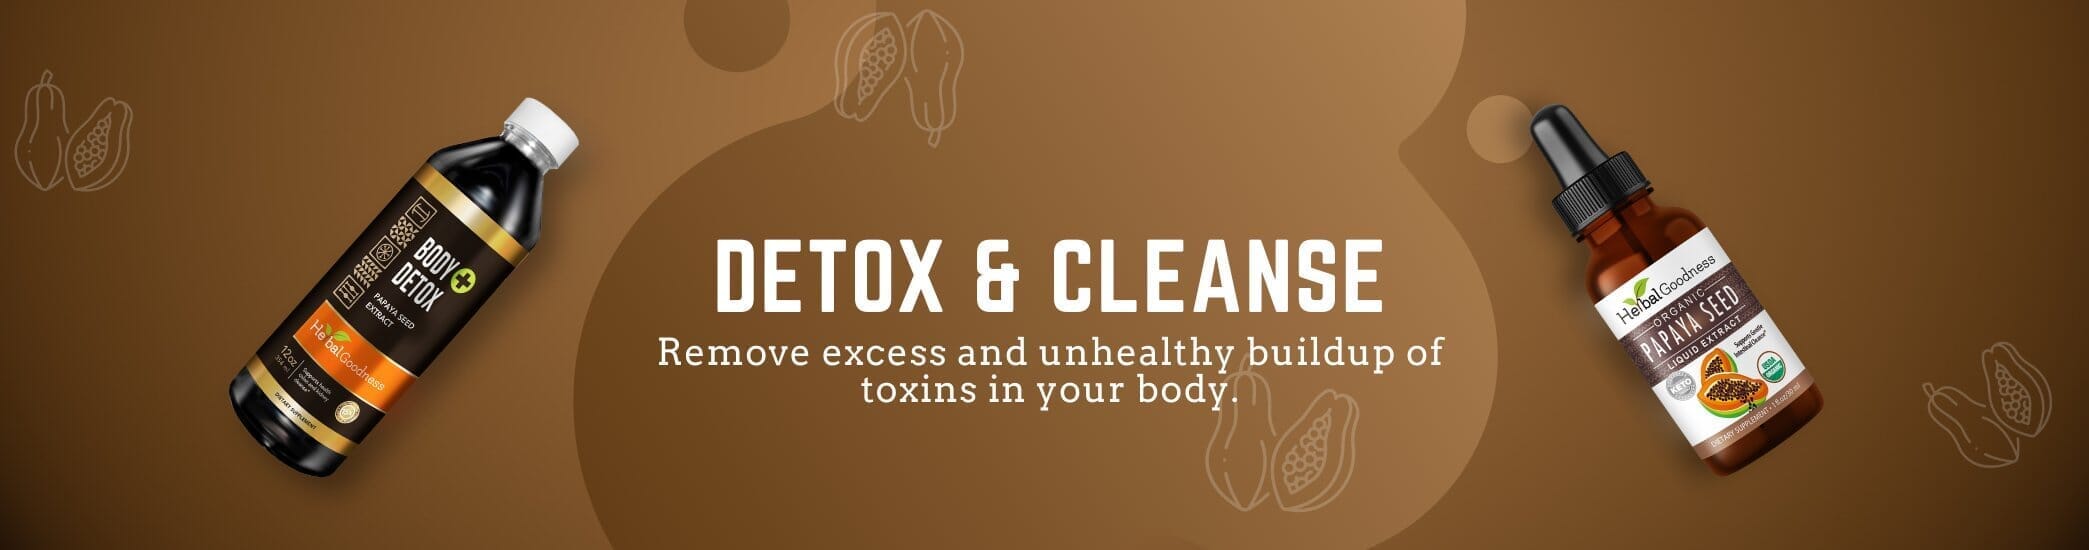 Detox & Cleanse - Gut, Kidney, Liver, Colon